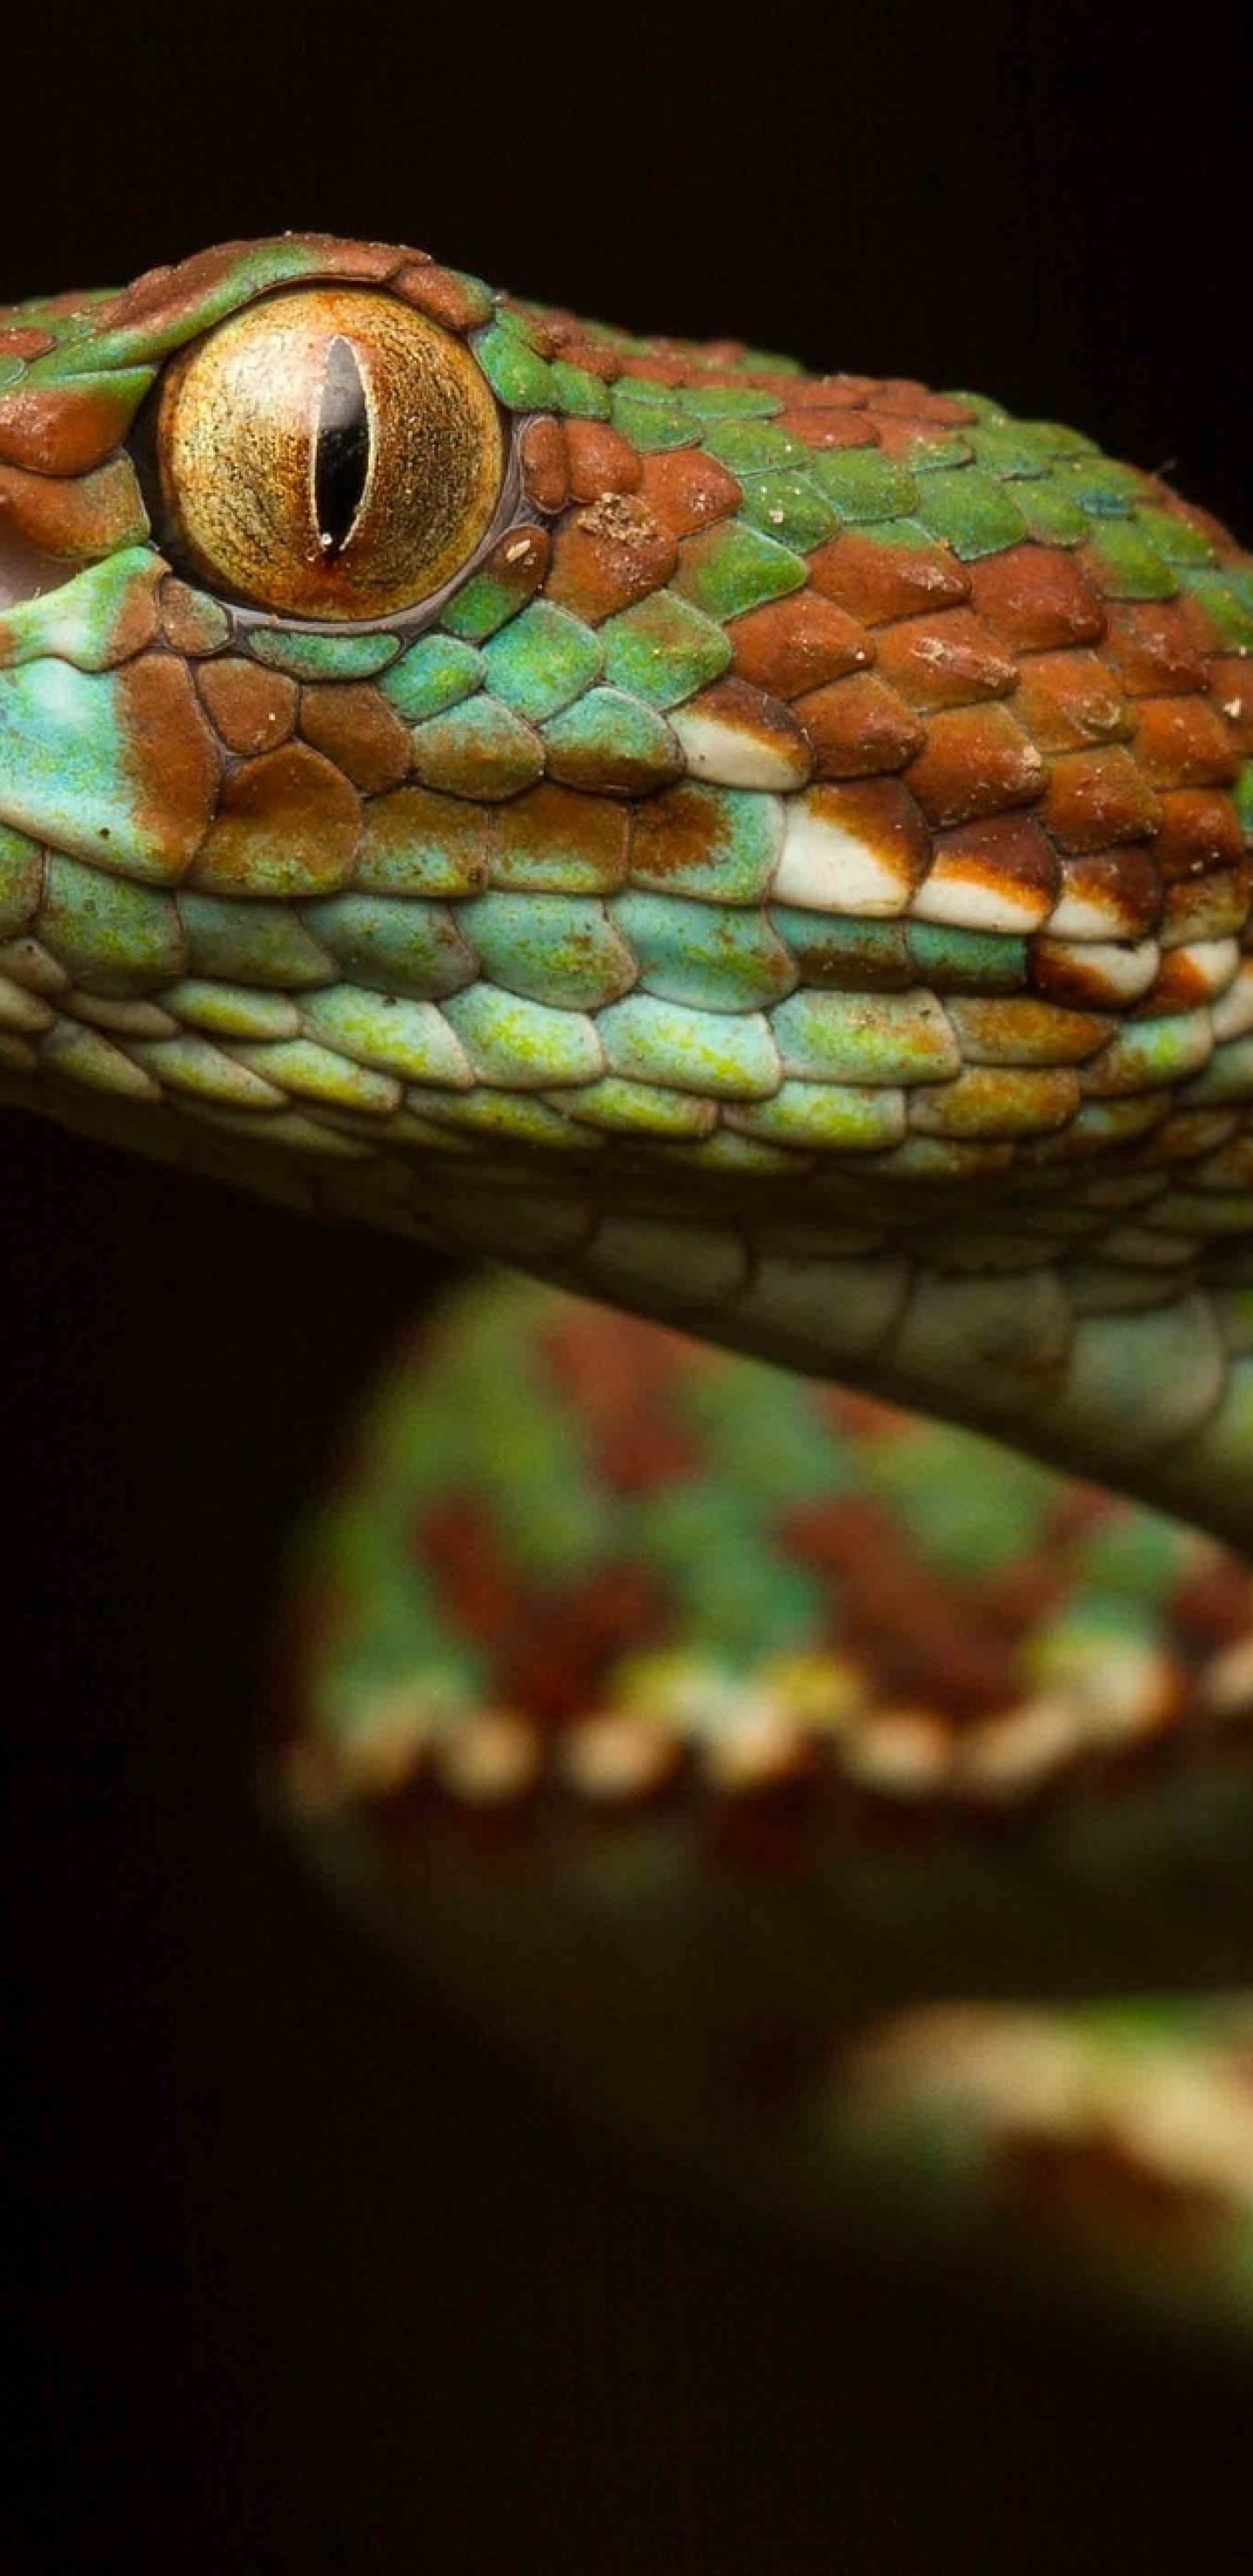 Green Snake, Macro, Viper, Reptile - HD Wallpaper 